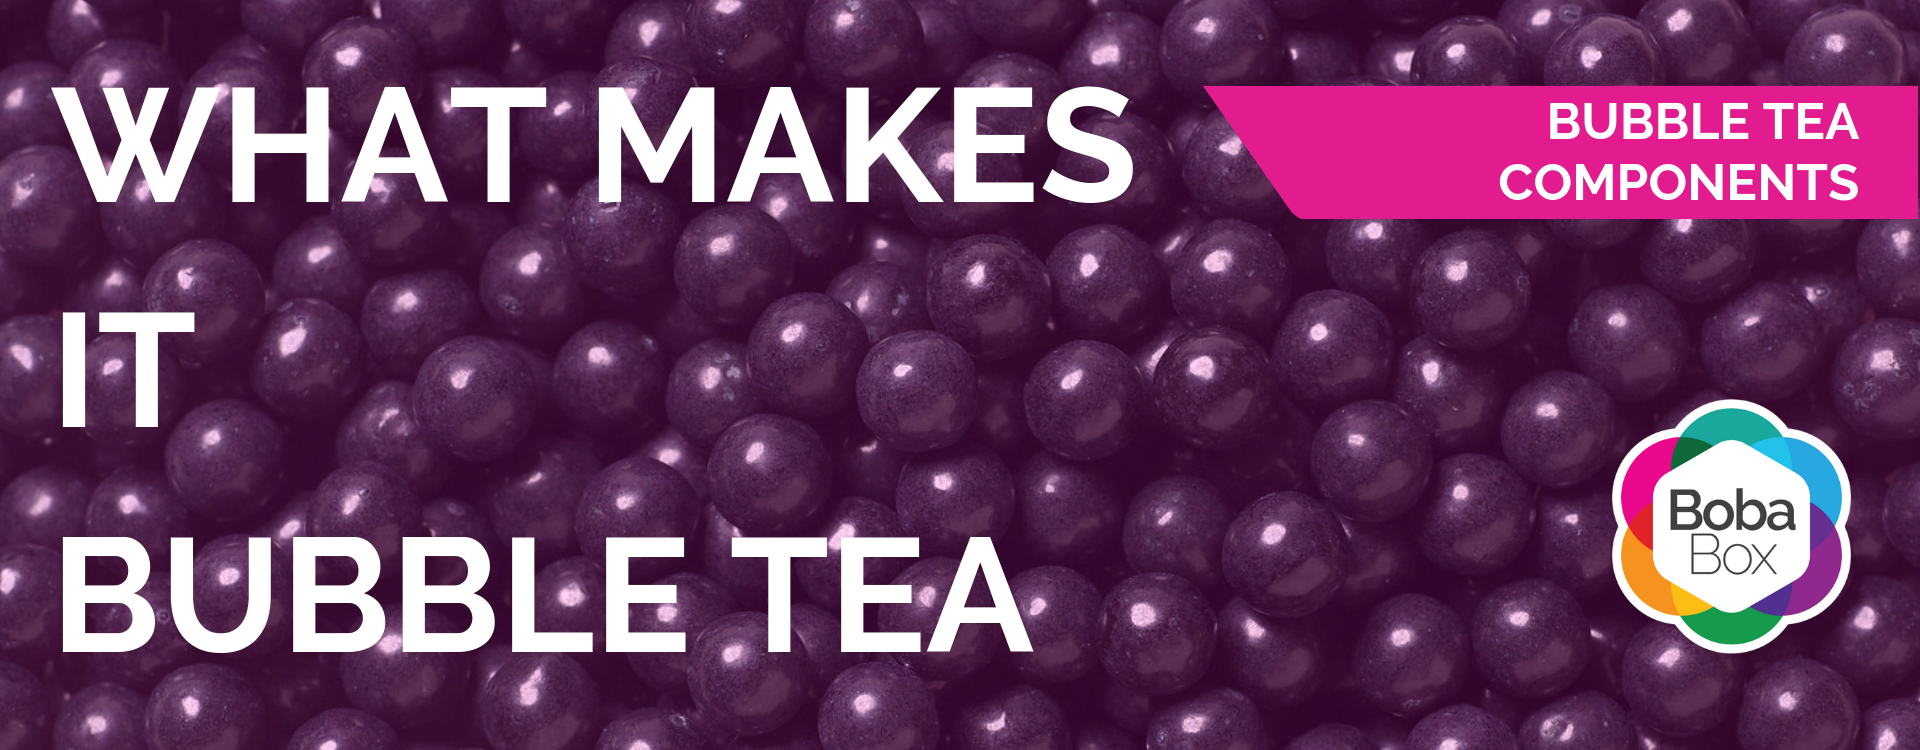 What makes it Bubble Tea?